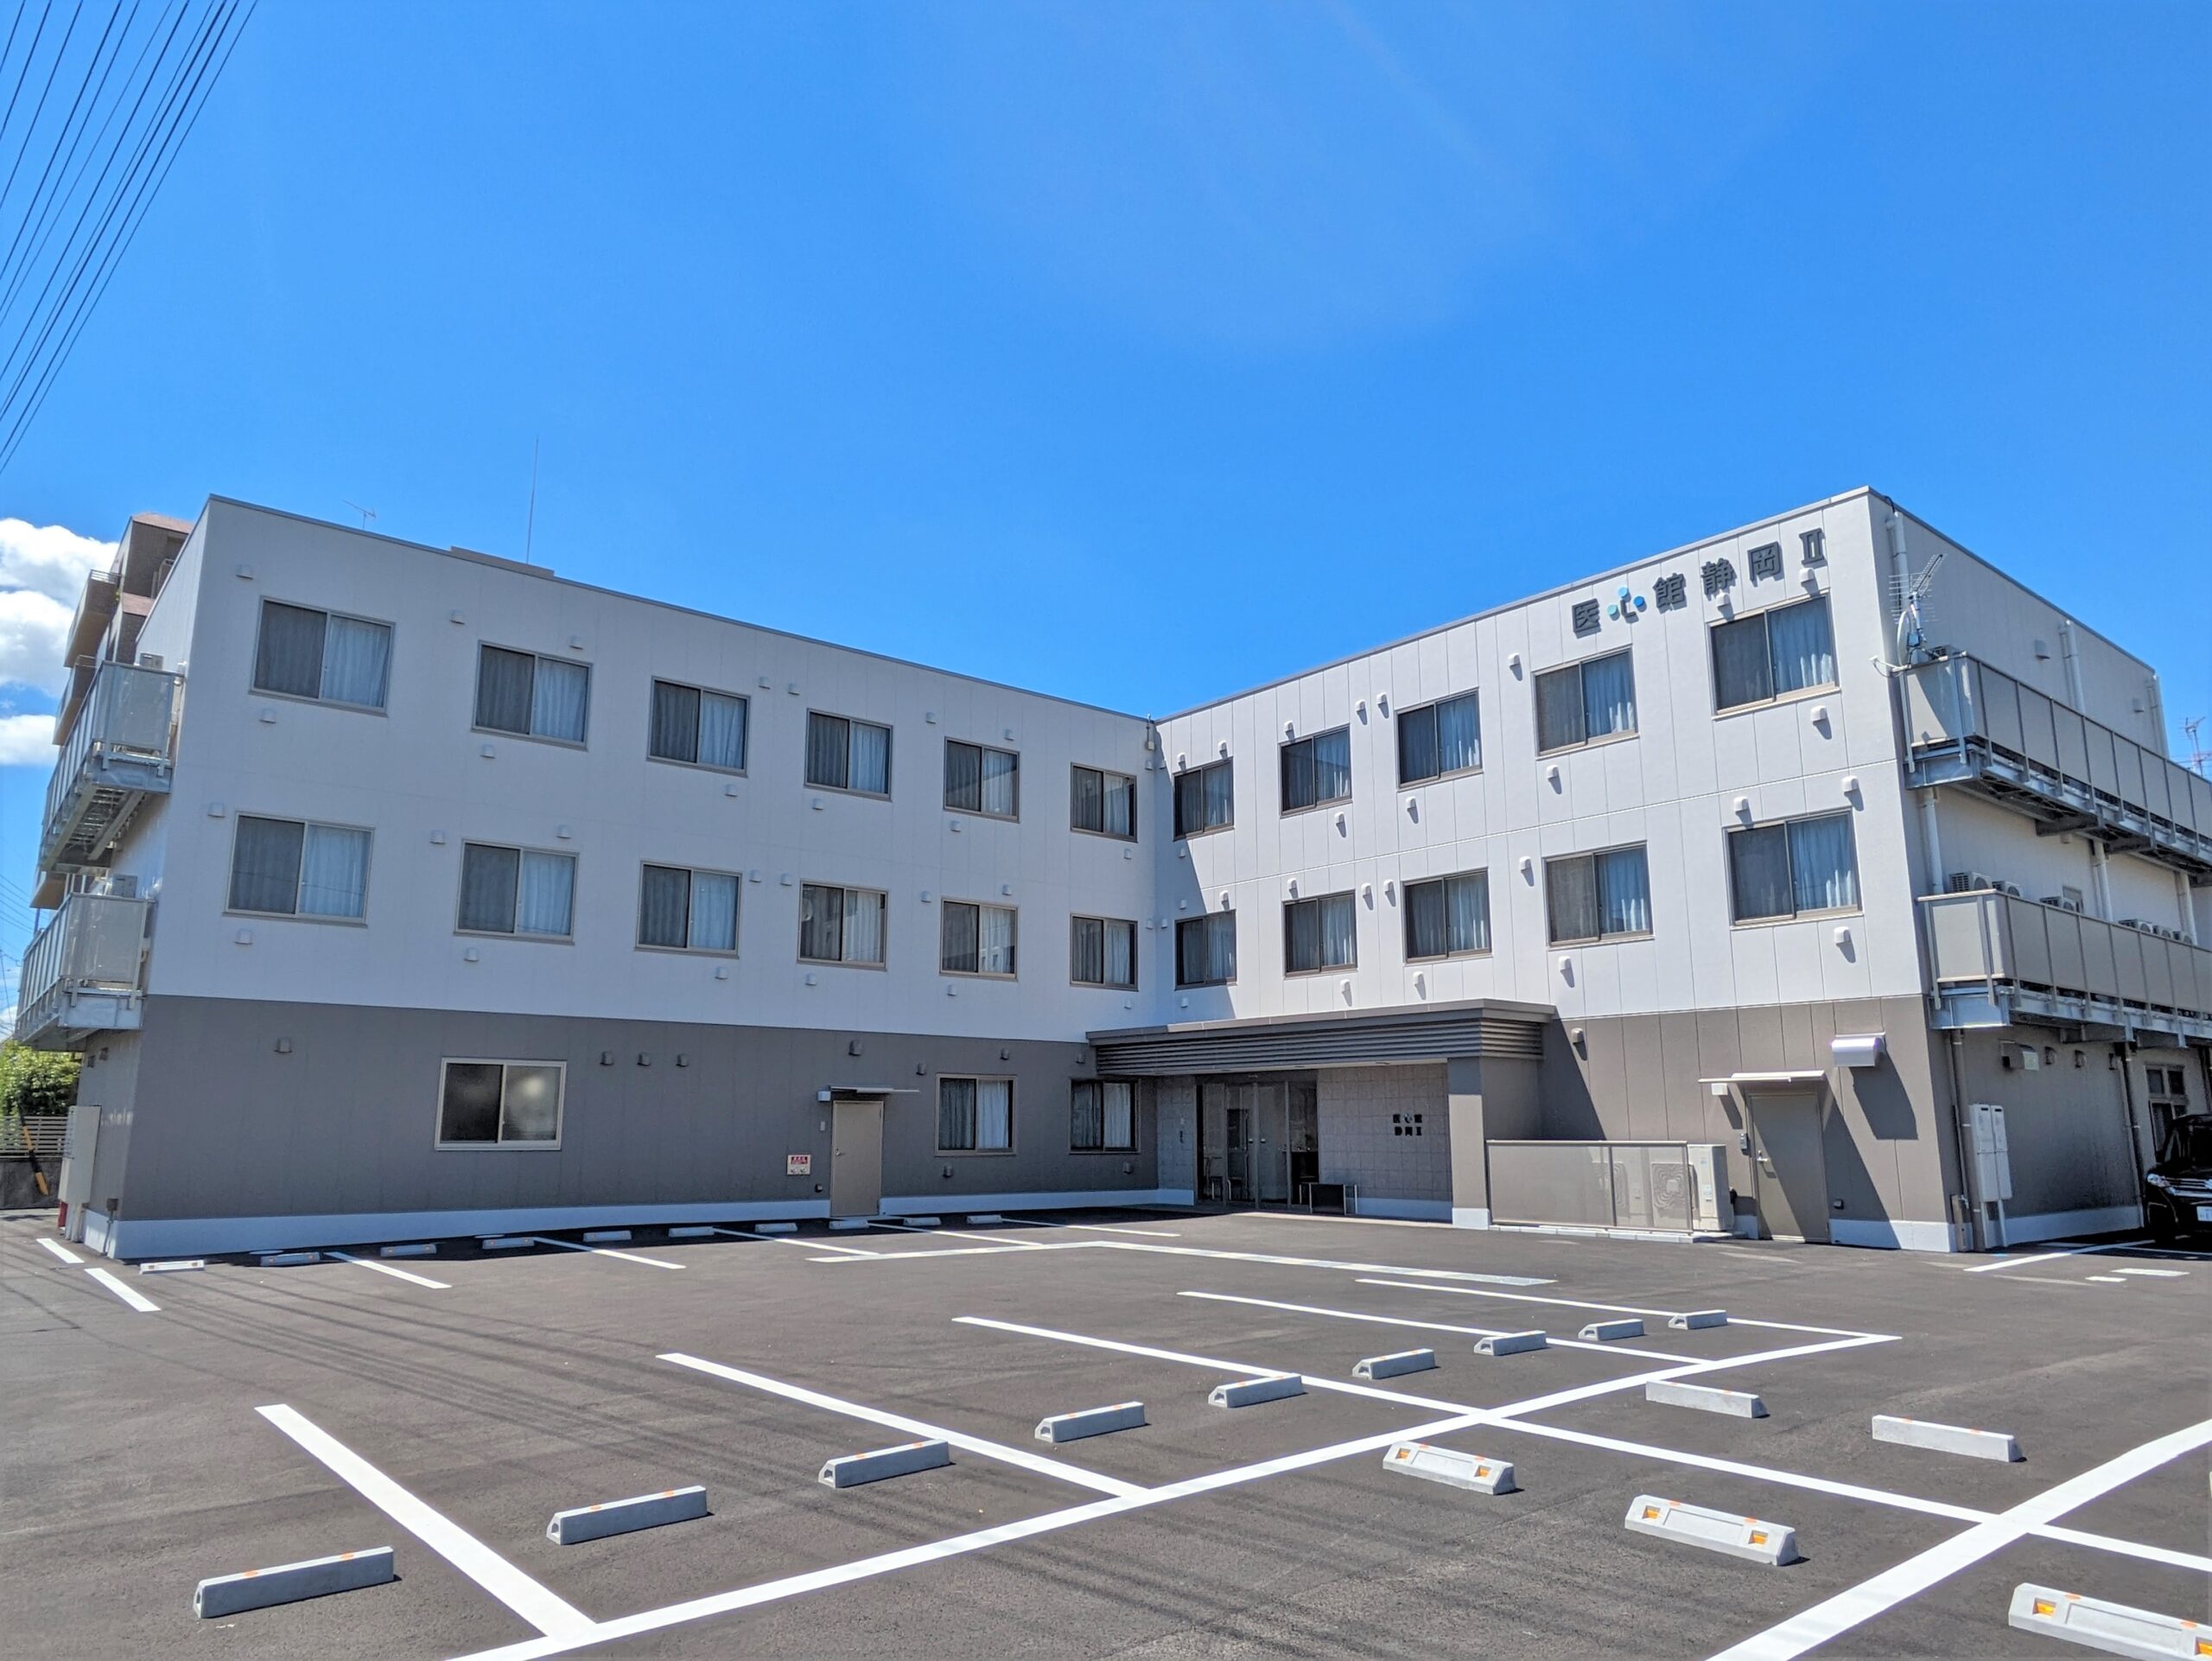 静岡県では５施設目となる 有料老人ホーム「医心館 静岡Ⅱ」をオープンしました